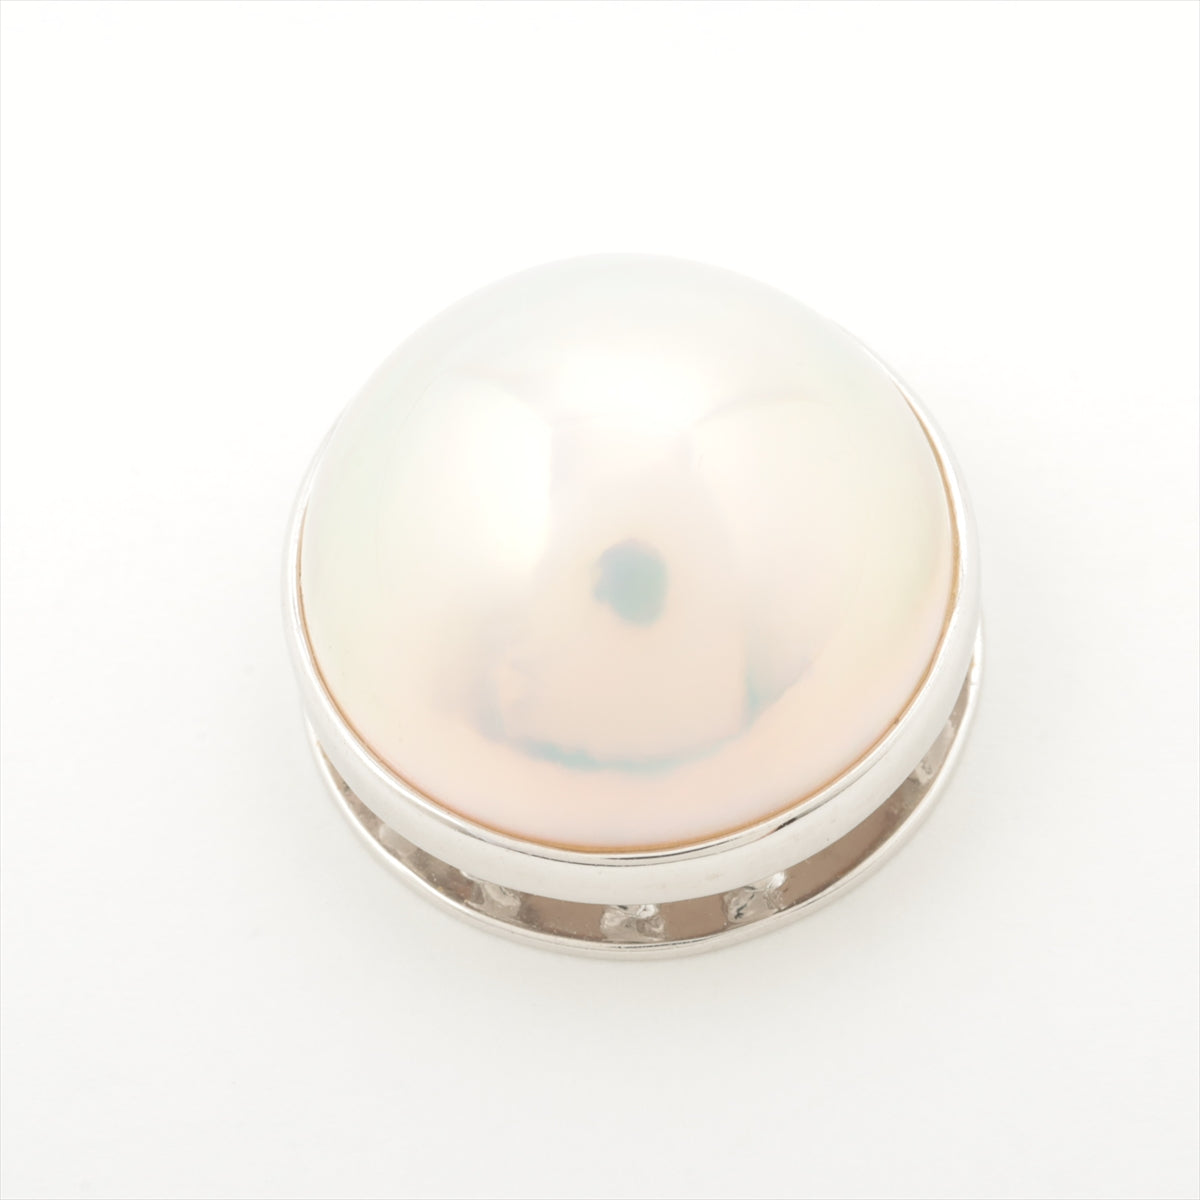 TASAKI Mabe pearl Necklace top K18WG 5.2g